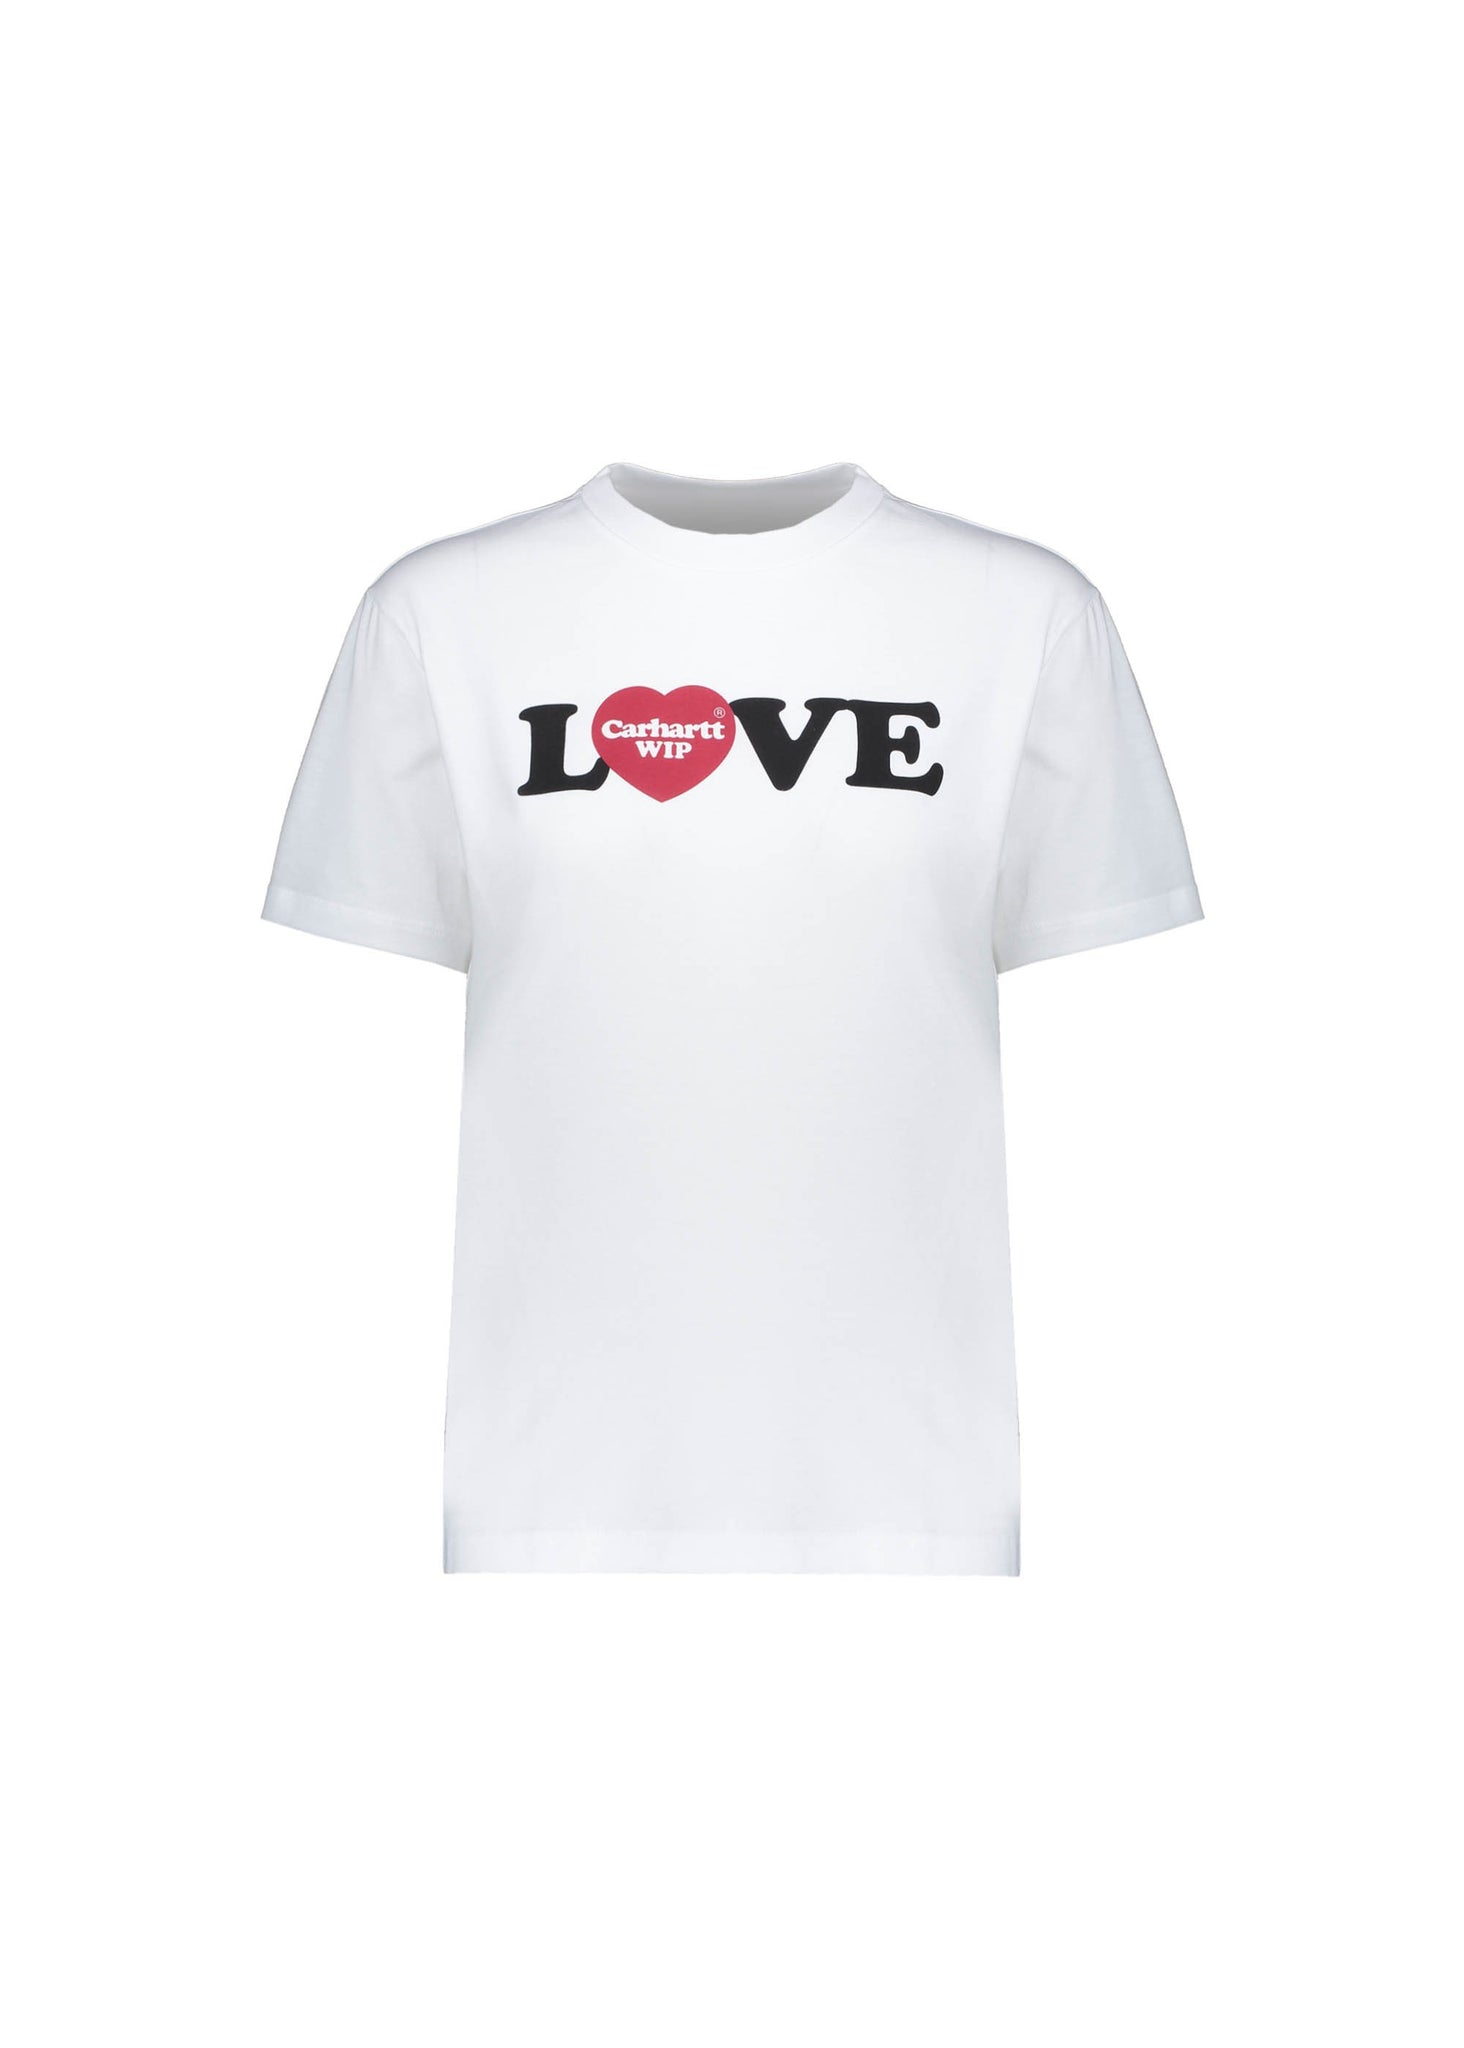 Carhartt WIP S/S Love T-shirt - White